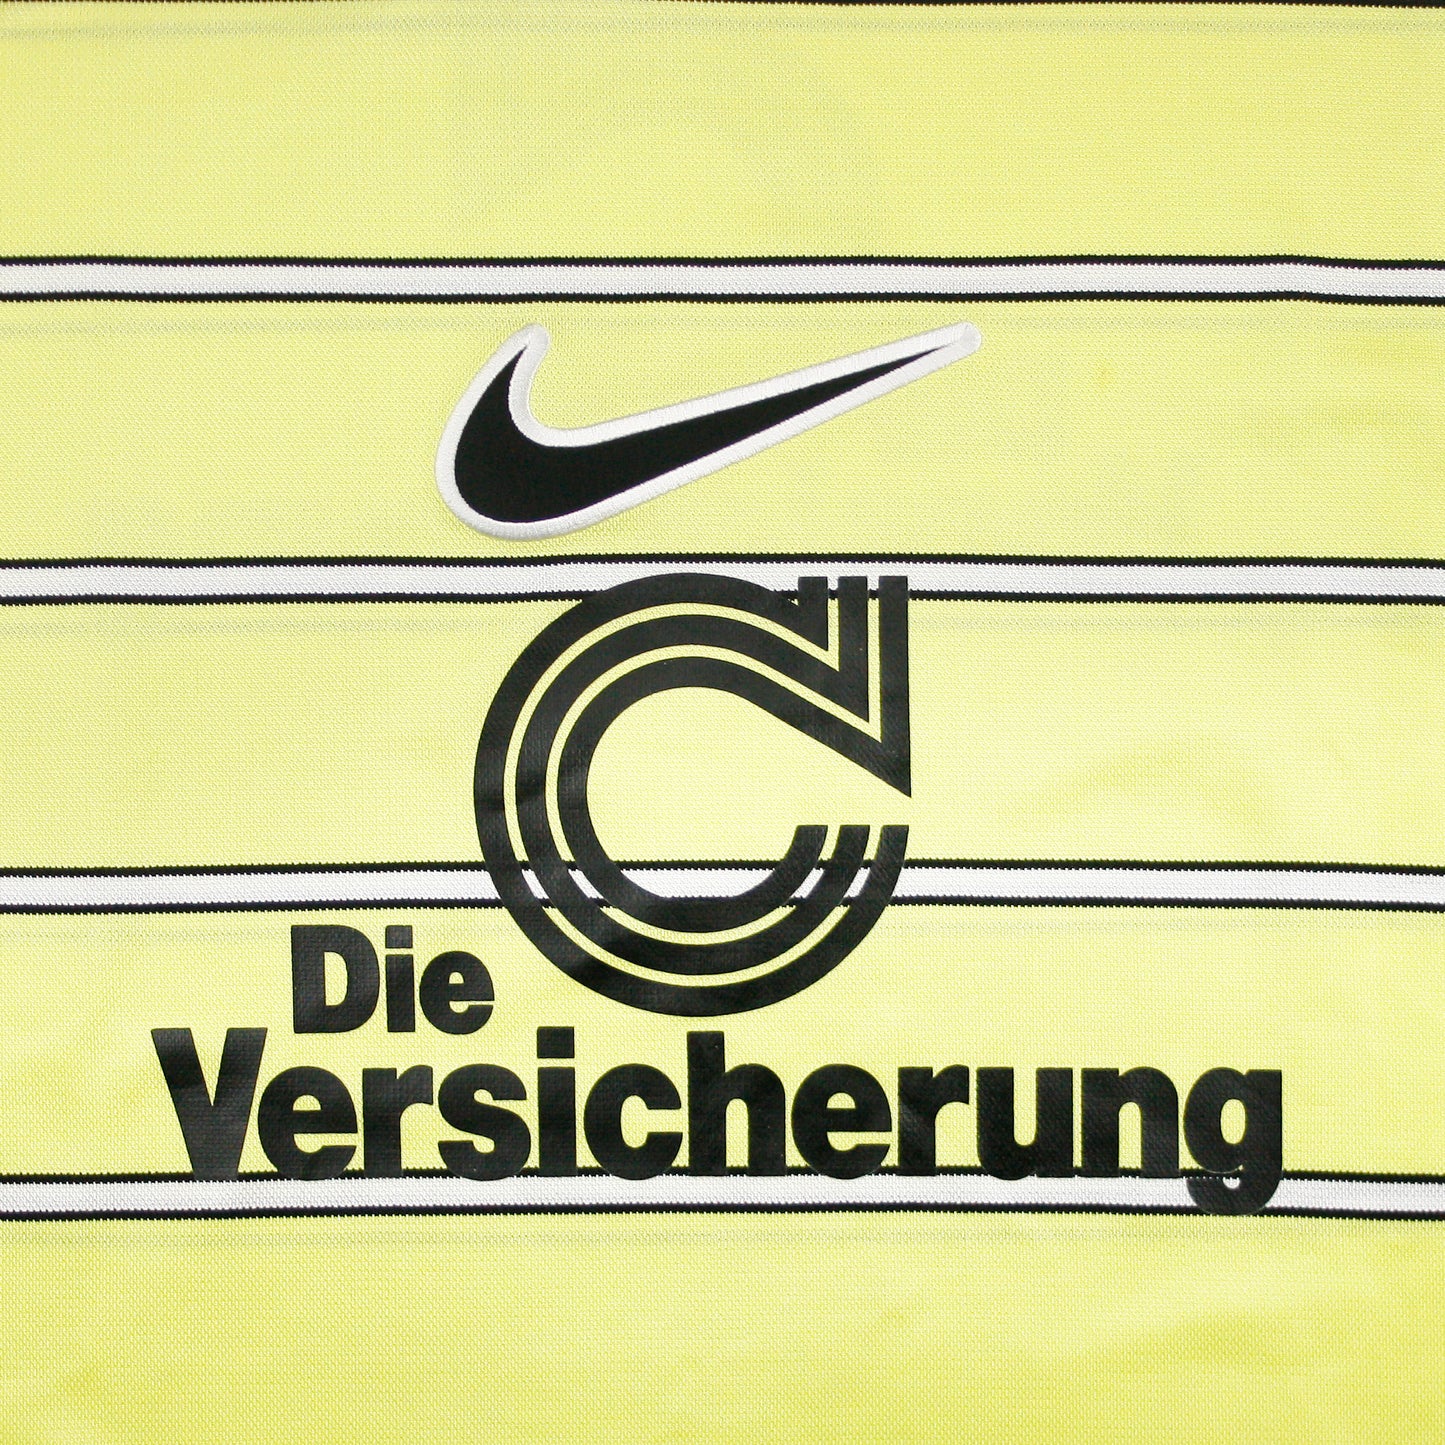 Borussia Dortmund 96/97 • Training Shirt • XL